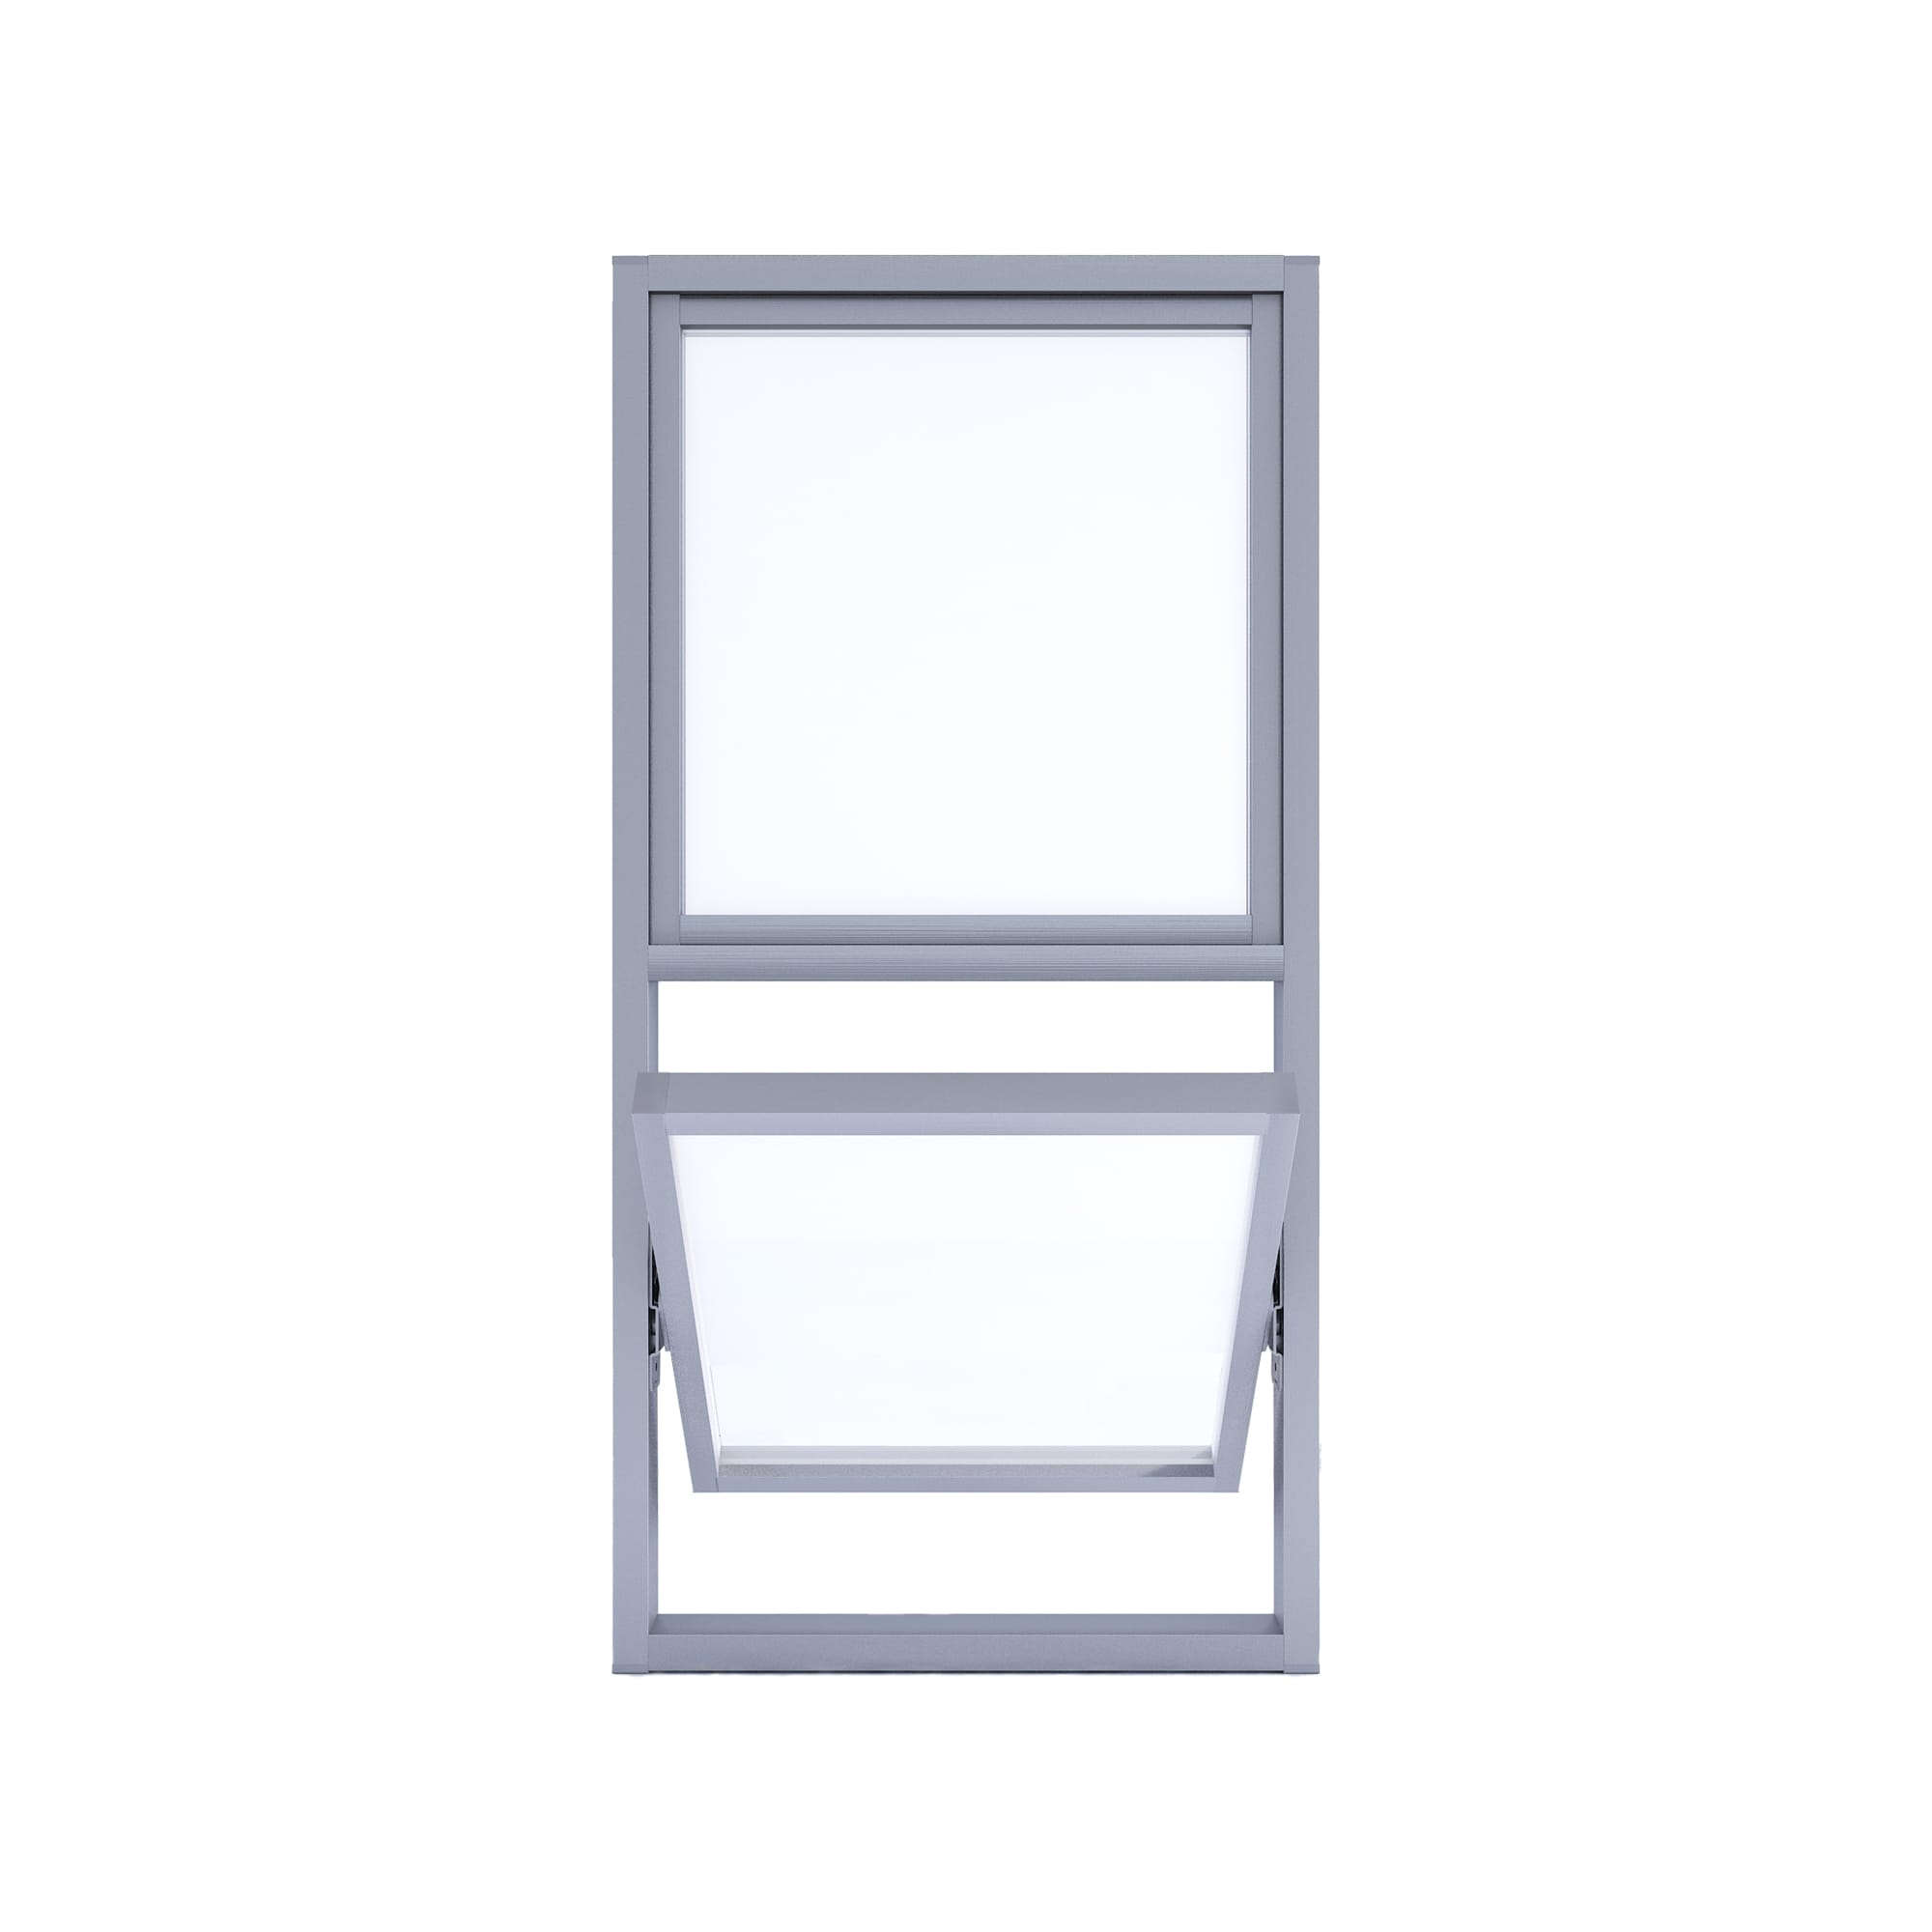 室内アルミサッシ FIX窓＋回転窓 シルバー 樹脂パネル DW-DR013-16-G201